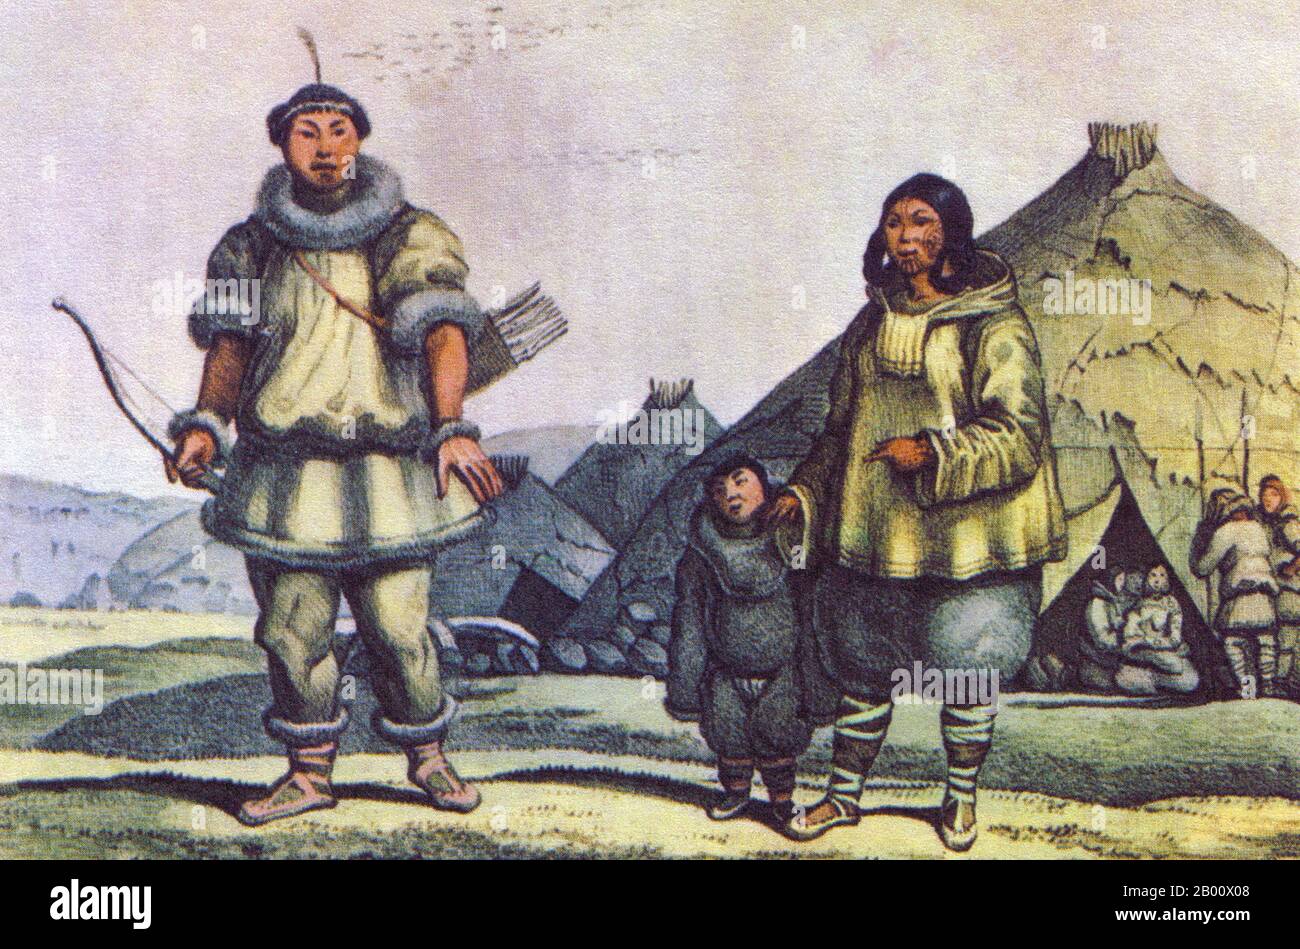 Russland: Eine Tschuktschen-Familie vor ihrem Haus in der Nähe der Beringstraße. Zeichnung von Louis Choris (1795-1828), 1816. Tschuktschen oder Tschuktschen sind ein indigenes Volk, das auf der Halbinsel Tschuktschen und an den Ufern des Tschuktschen Meeres und der Beringsee-Region des Arktischen Ozeans innerhalb der Russischen Föderation lebt. Sie sprechen die Sprache der Tschuktschen. Die Tschuktschen stammten von den Menschen, die um das Ochotsker Meer lebten. Stockfoto